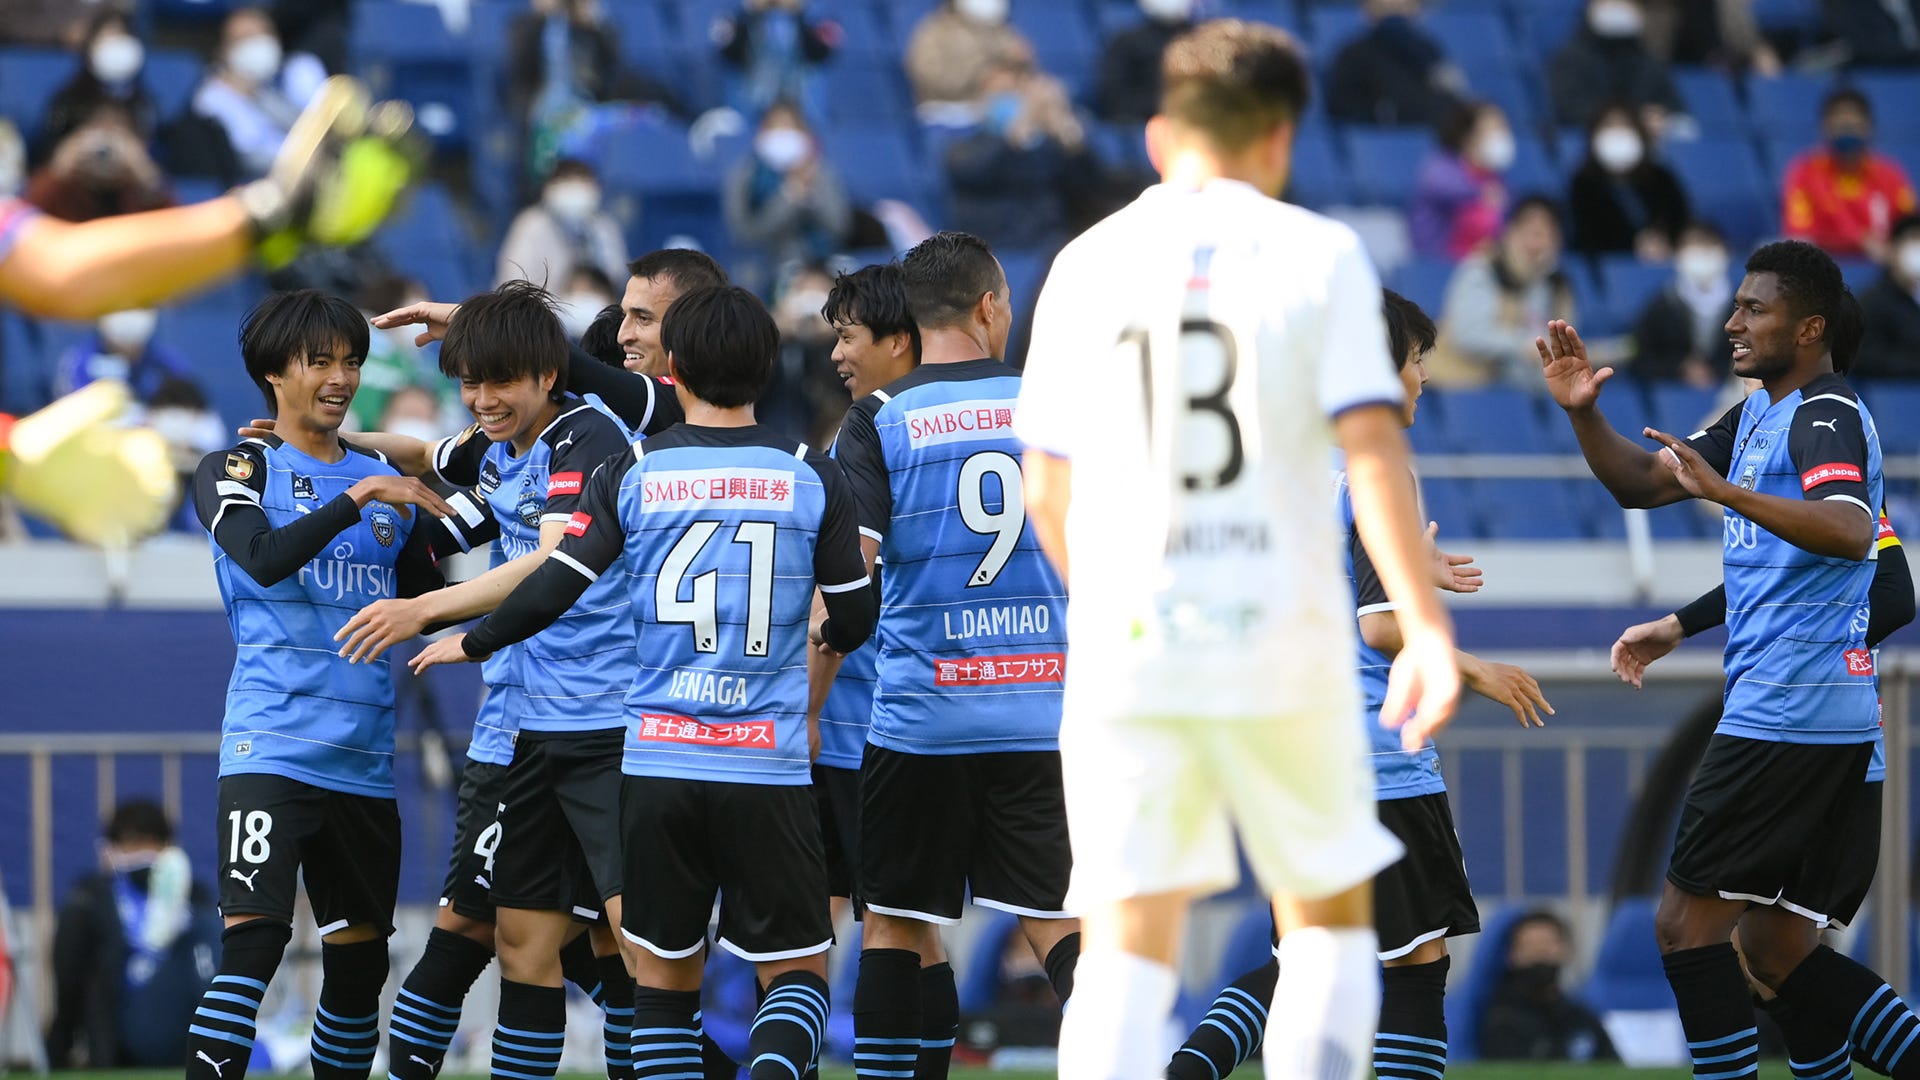 ガンバ大阪 2点差追いつくも及ばず 川崎フロンターレがゼロックス杯制す Jリーグ Goal Com 日本